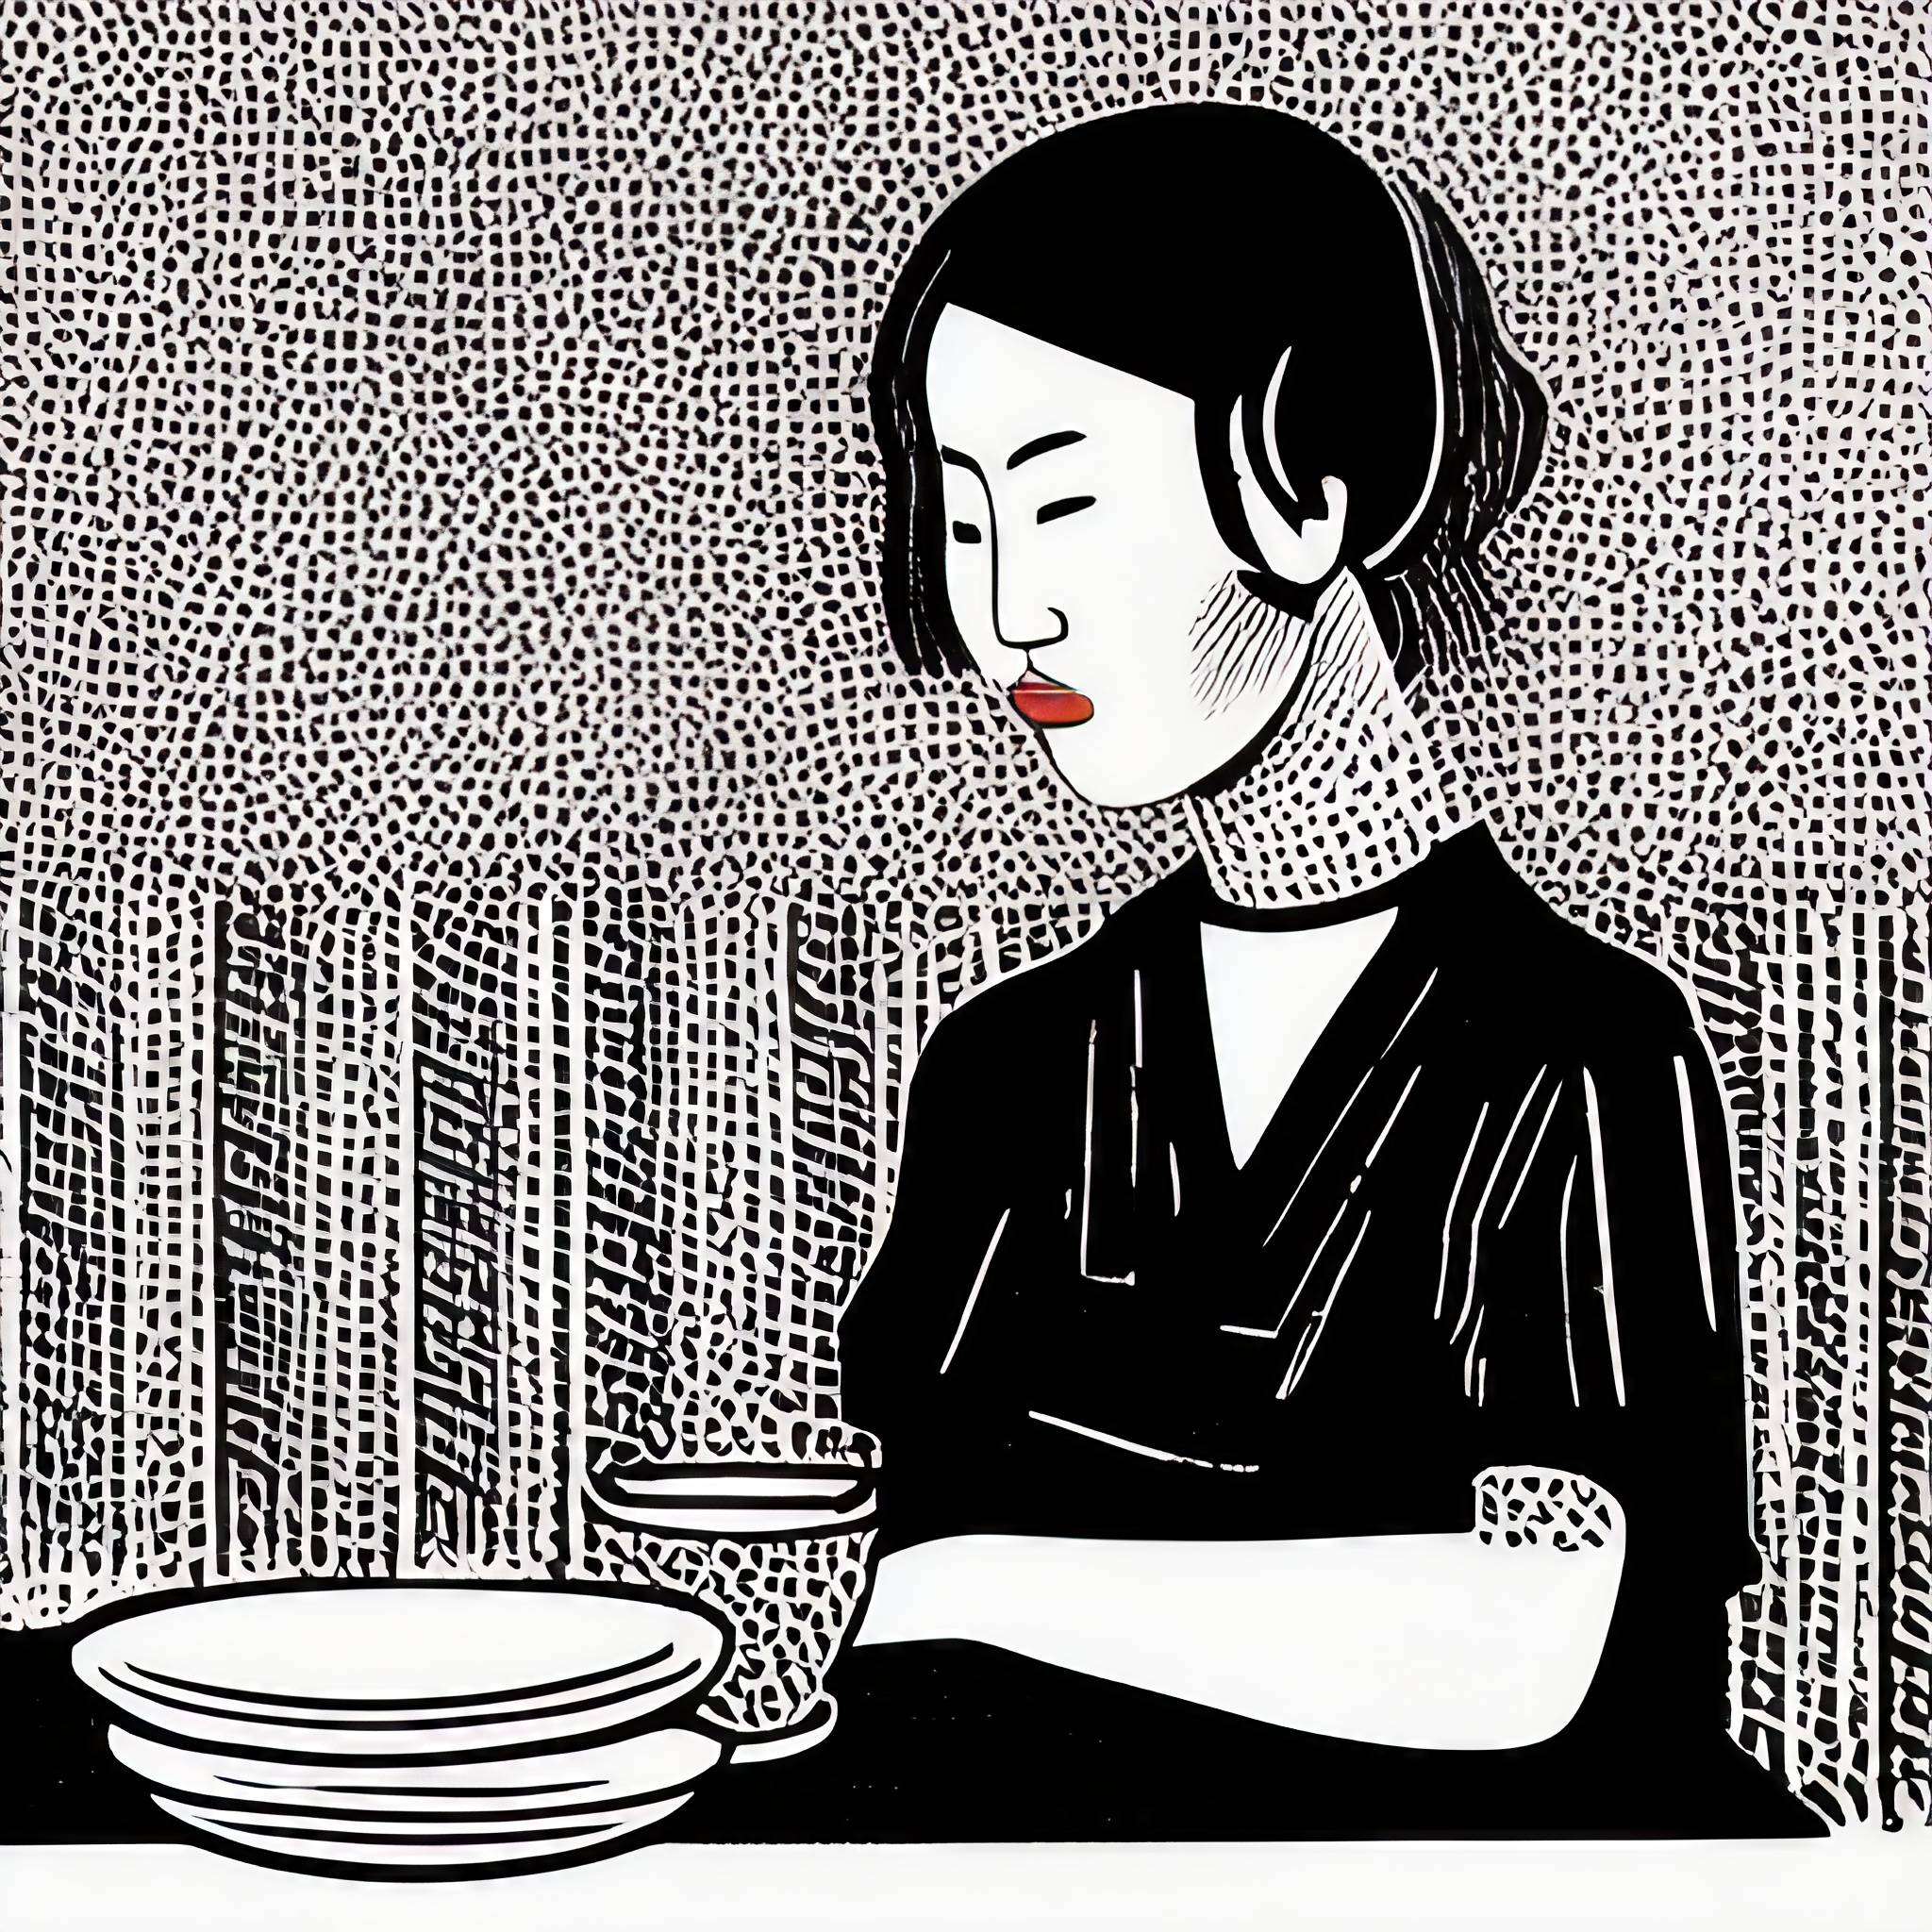 Painting of woman eating Hongeo in restaurant.